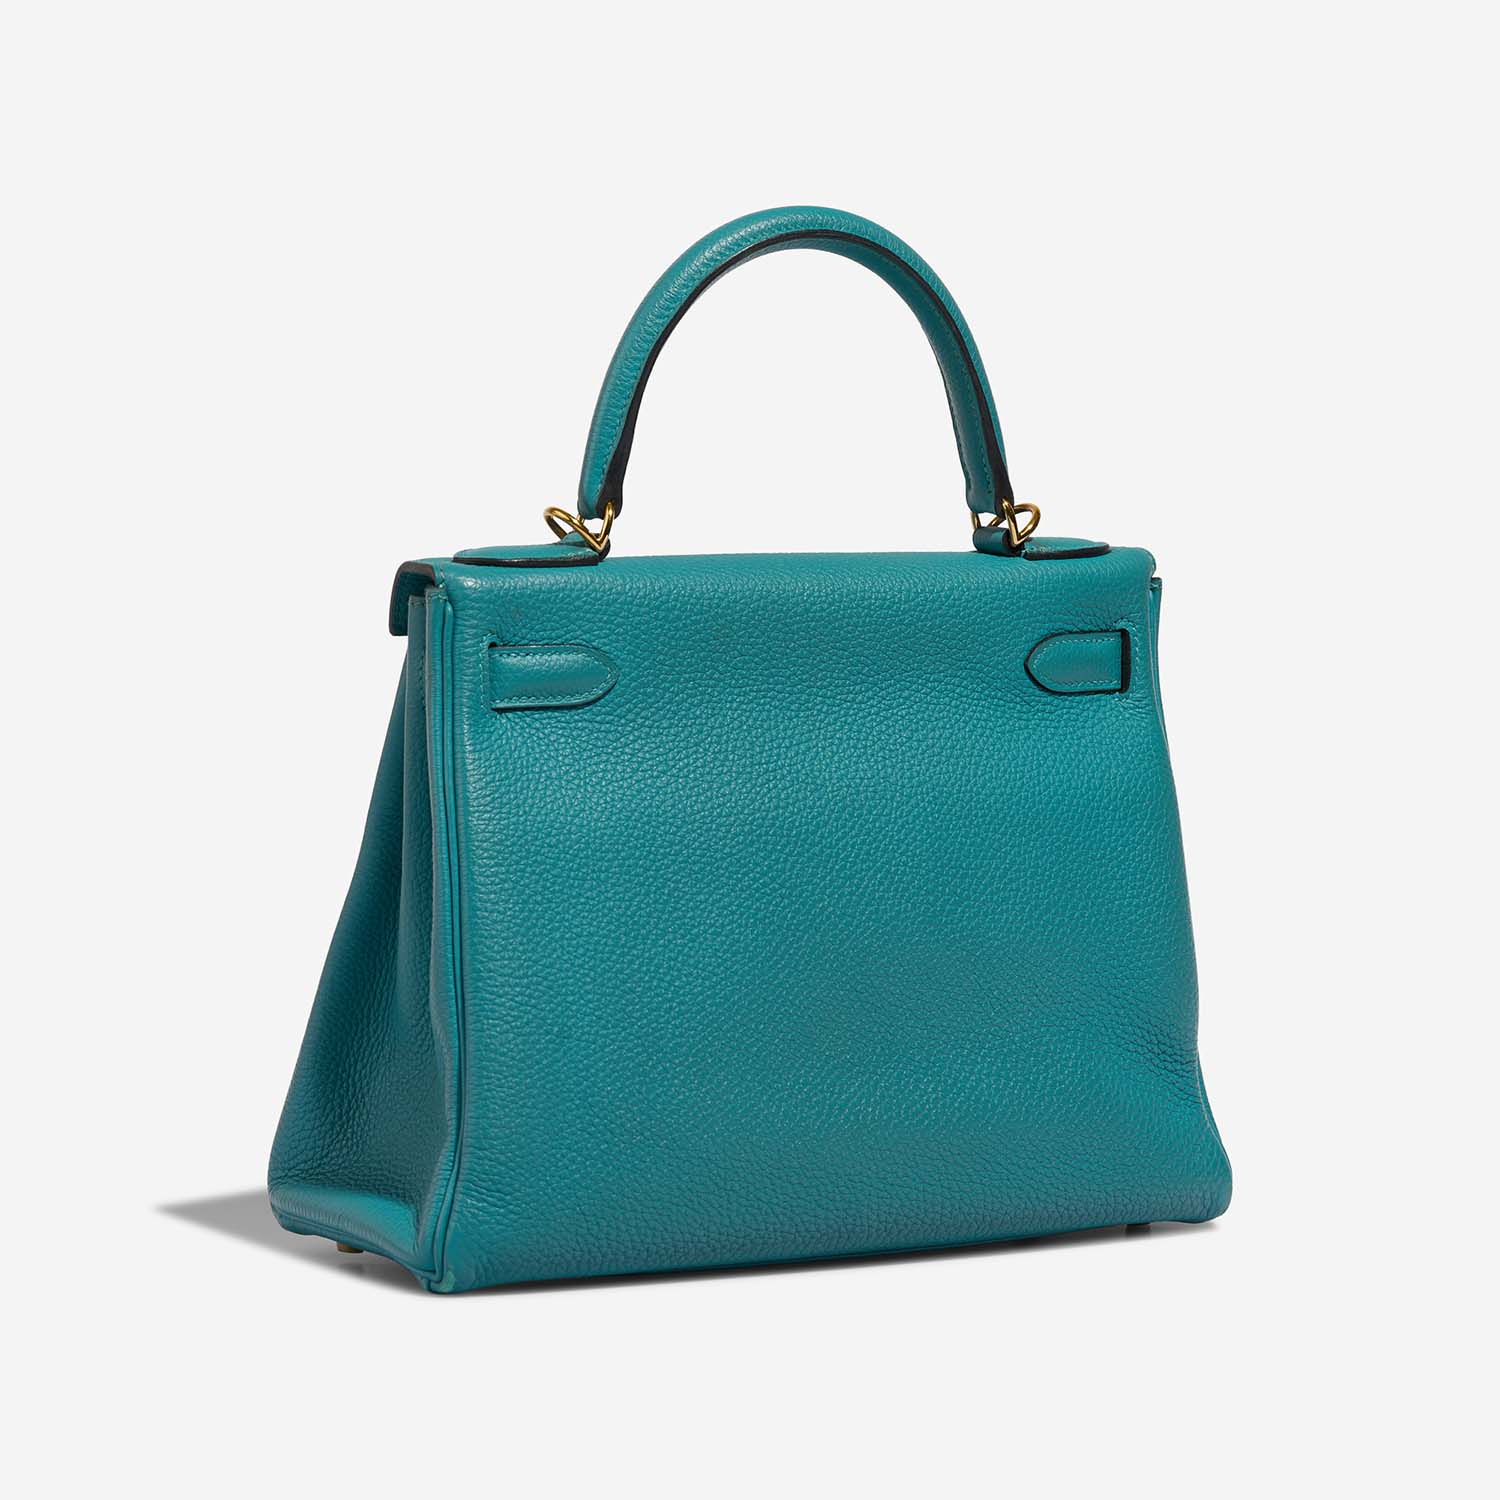 Hermès Kelly 28 BleuPaon Side Back | Verkaufen Sie Ihre Designer-Tasche auf Saclab.com